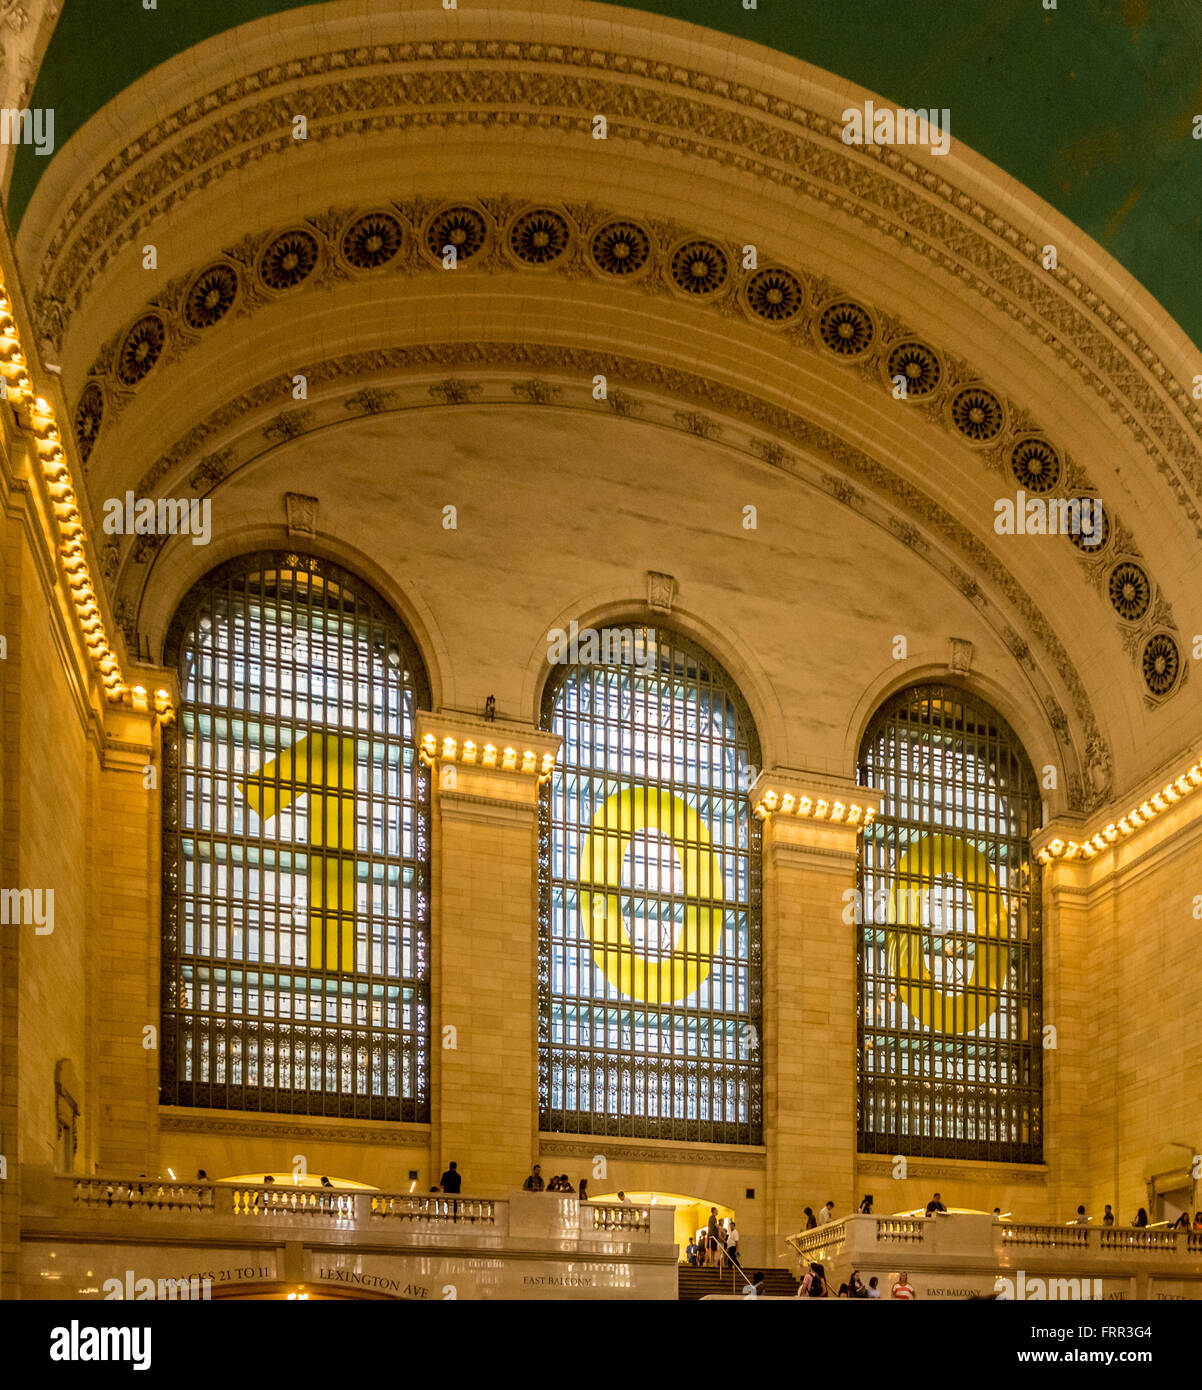 Grand Central Terminal stazione ferroviaria, New York City, Stati Uniti d'America. Foto Stock